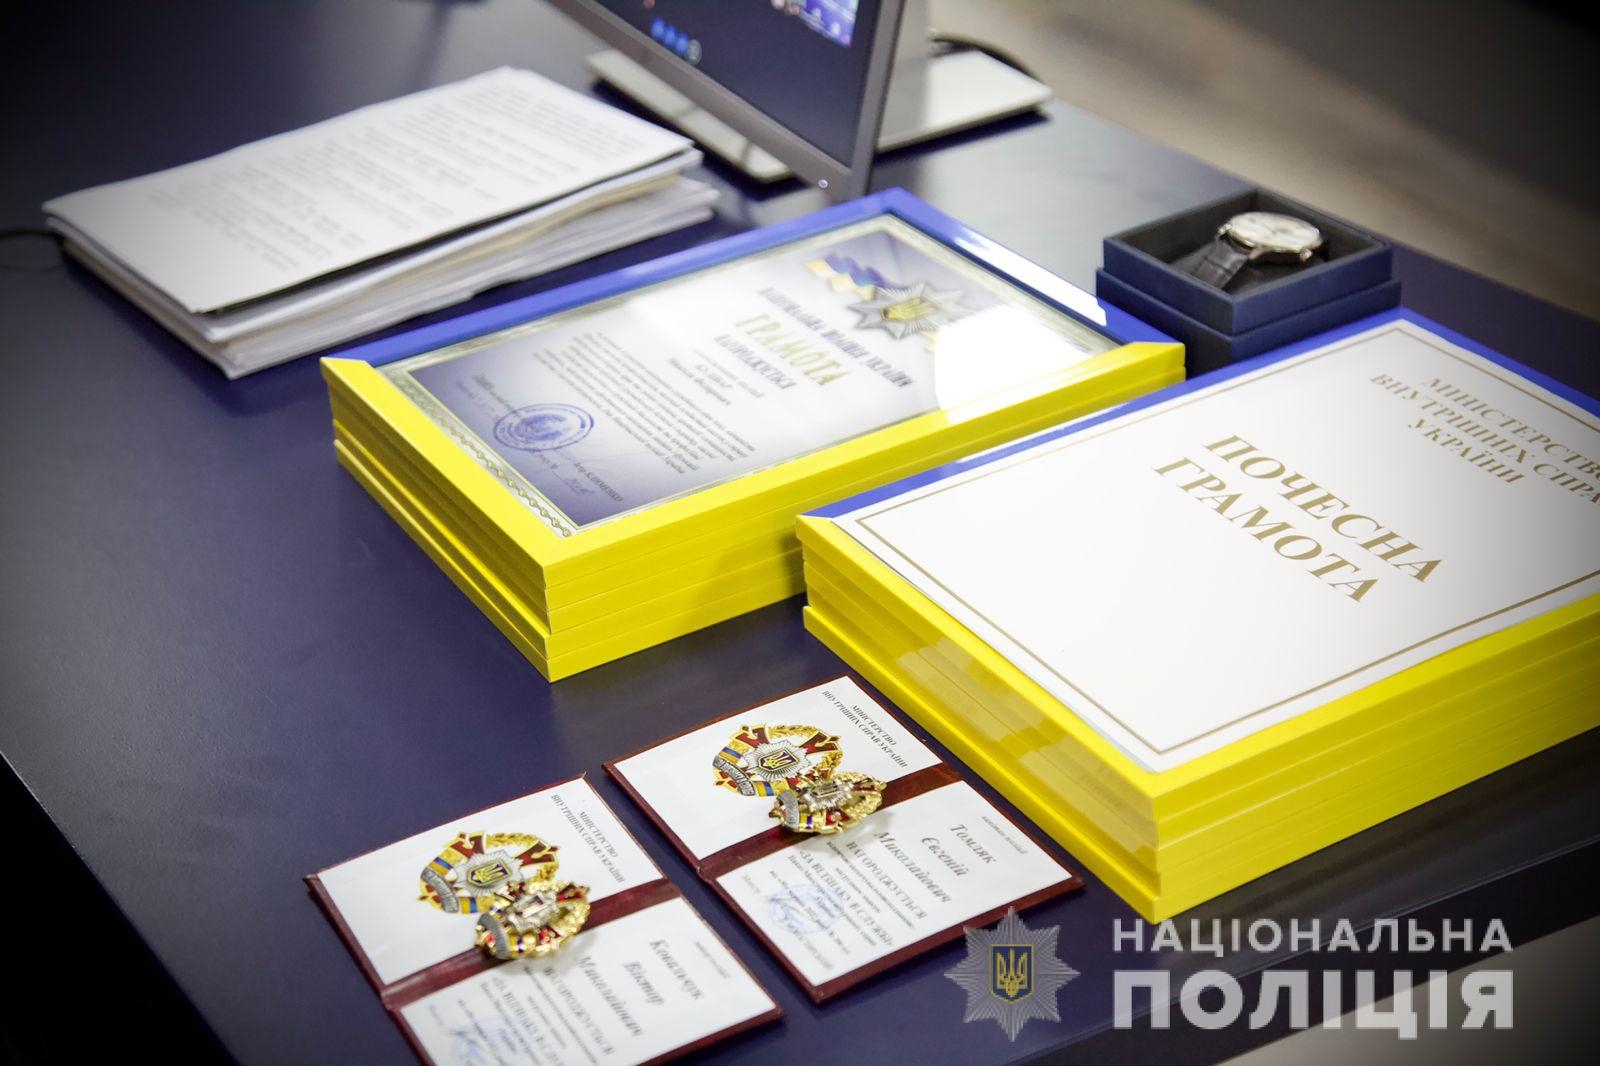 Очільник поліції Іван Іщенко вручив нагороди та відзнаки поліцейським Вінниччини